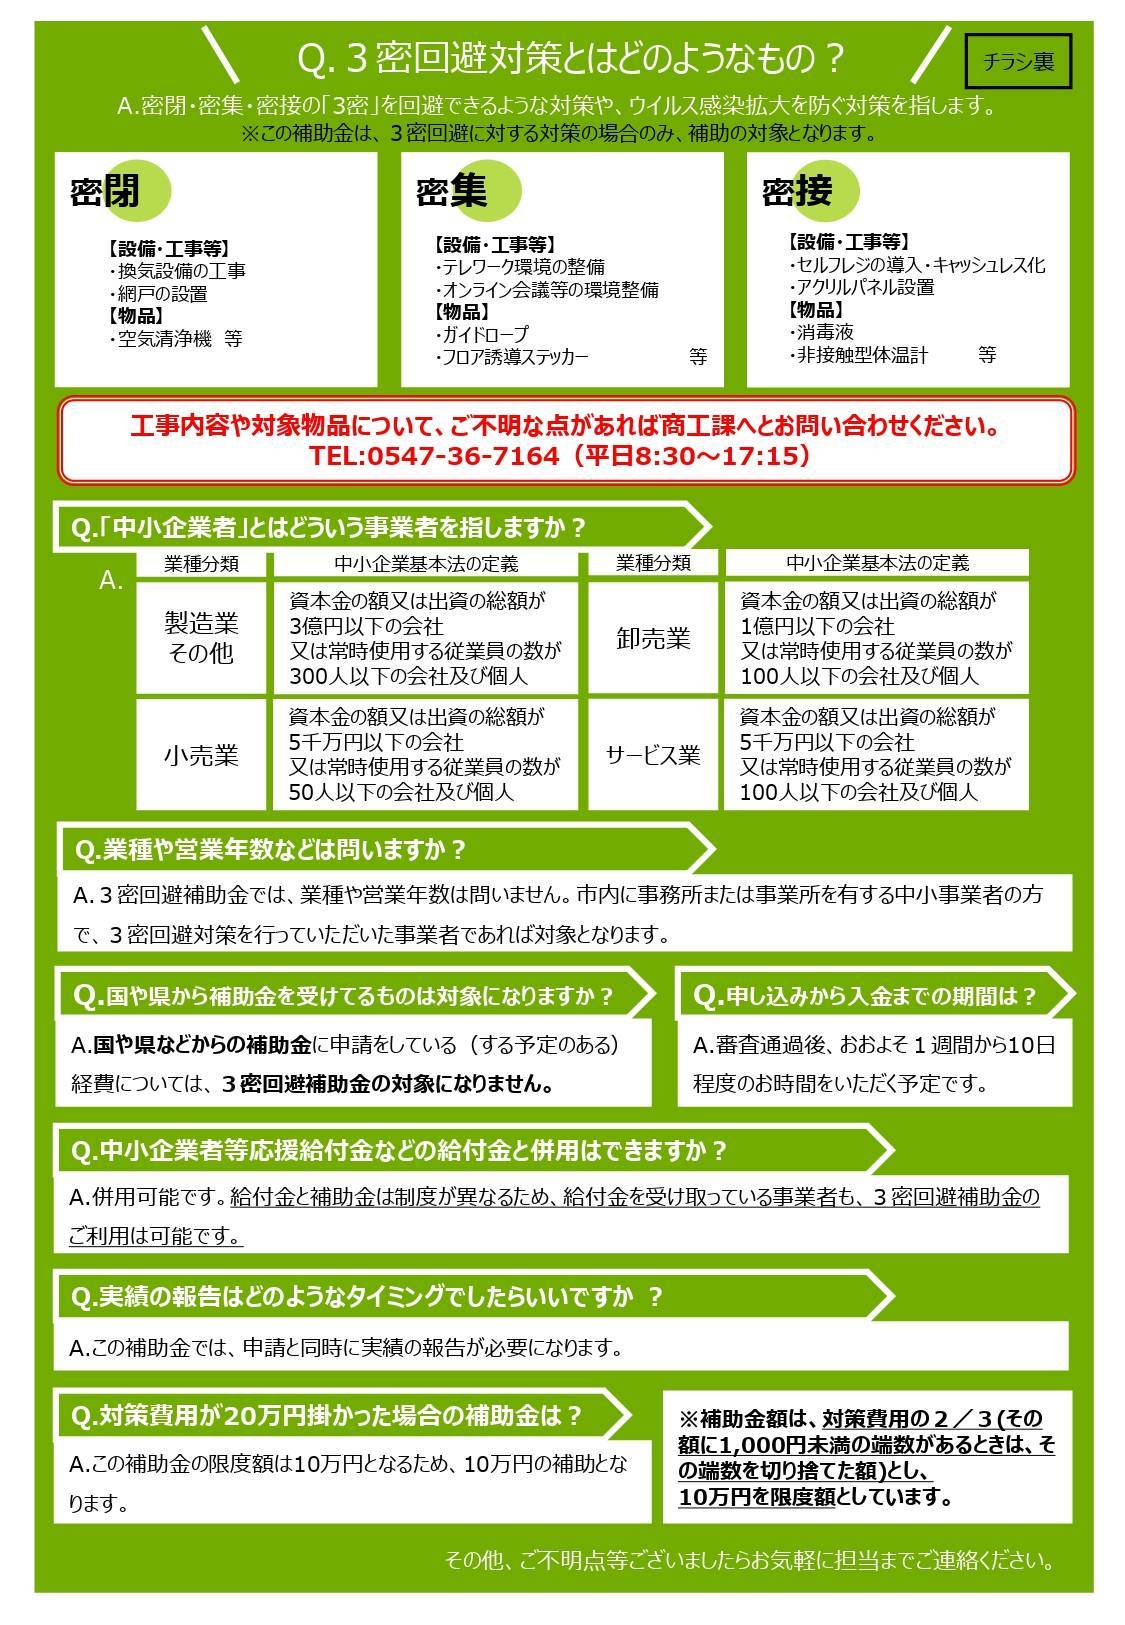 島田市新型コロナウイルス対策 松井トーヨー住建のイベントキャンペーン 写真2